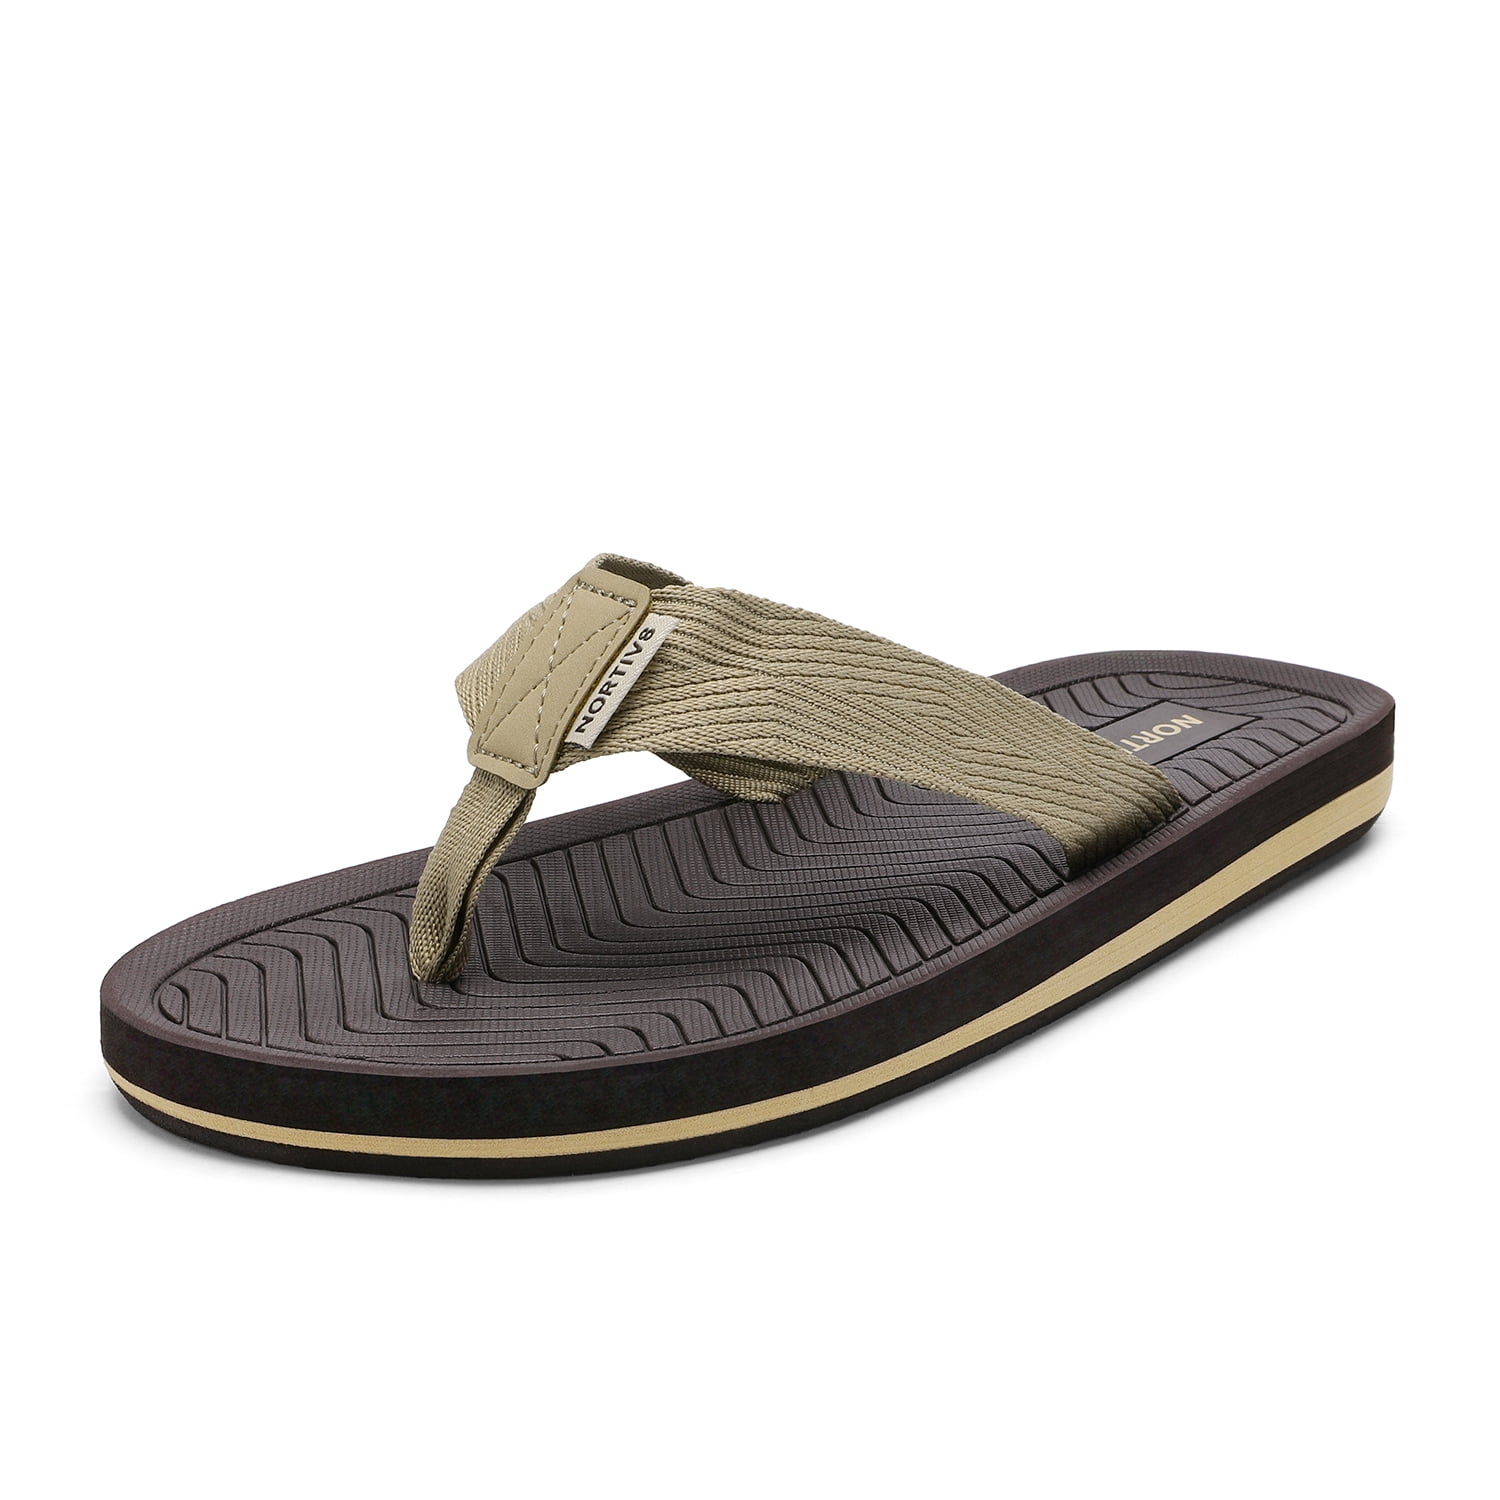 NORTIV 8 Mens Thong Flip Flops Sandals Comfortable Light Weight Beach Sandal 